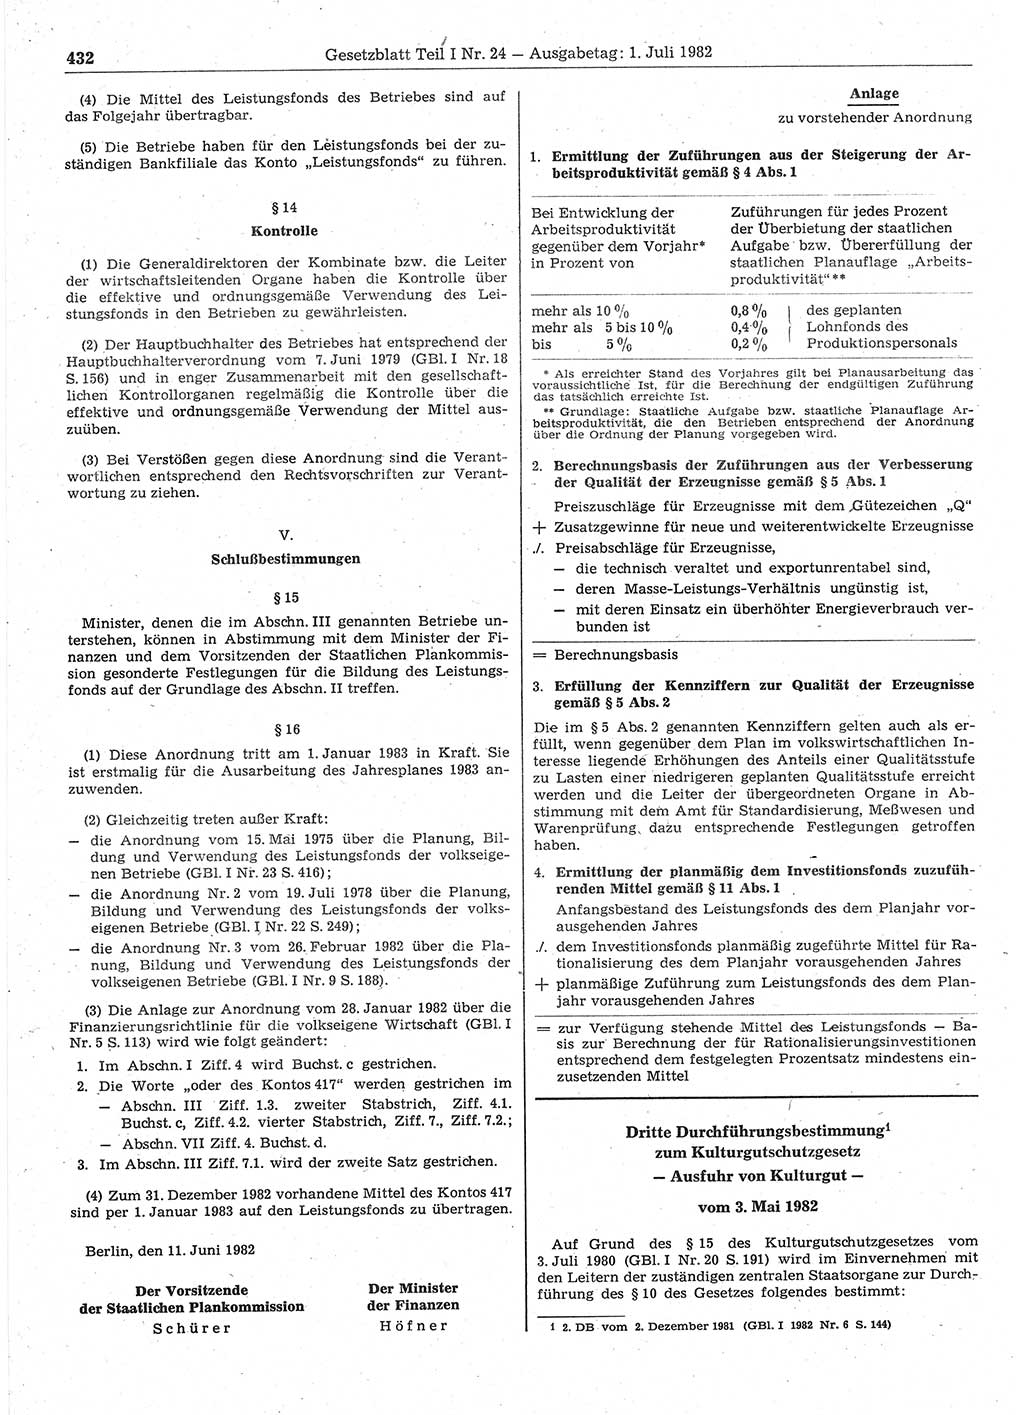 Gesetzblatt (GBl.) der Deutschen Demokratischen Republik (DDR) Teil Ⅰ 1982, Seite 432 (GBl. DDR Ⅰ 1982, S. 432)